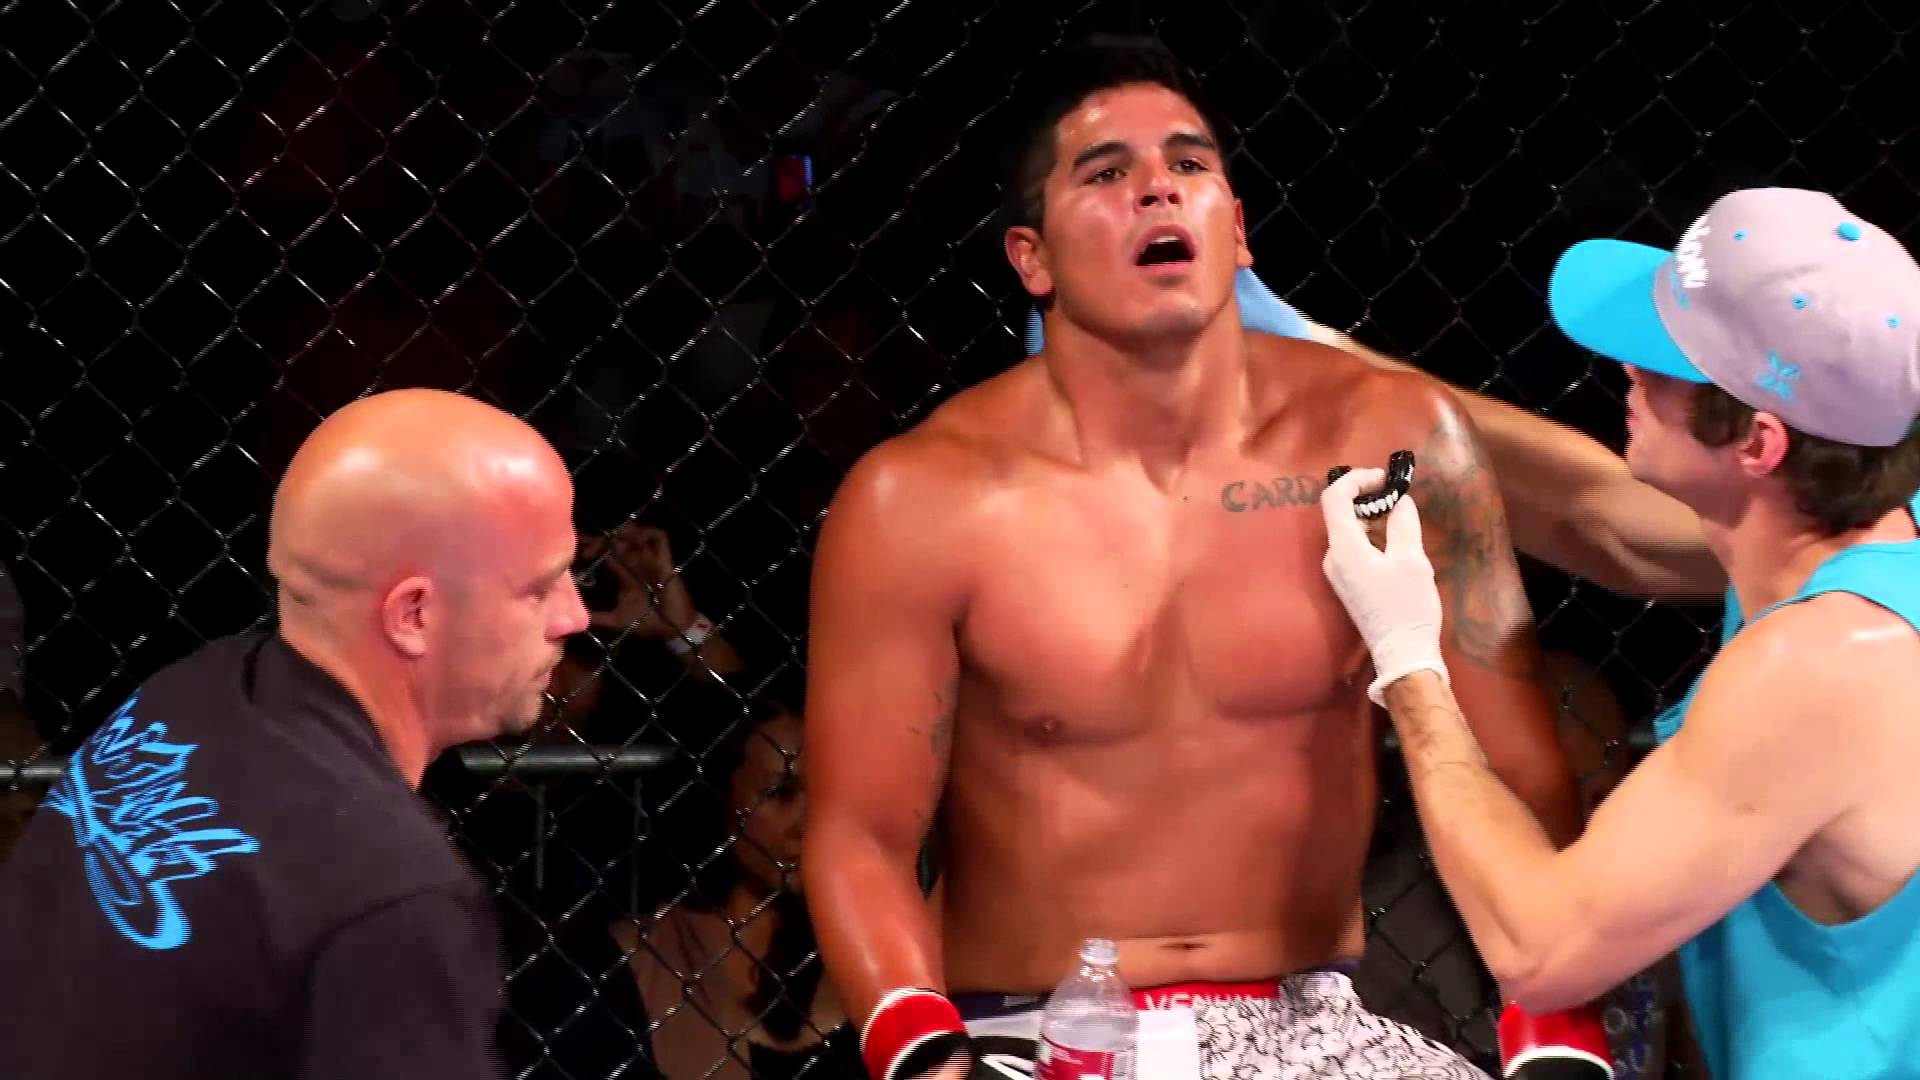 Michael Cardona vs Eladio Silvas Full Fight MMA Video1920 x 1080